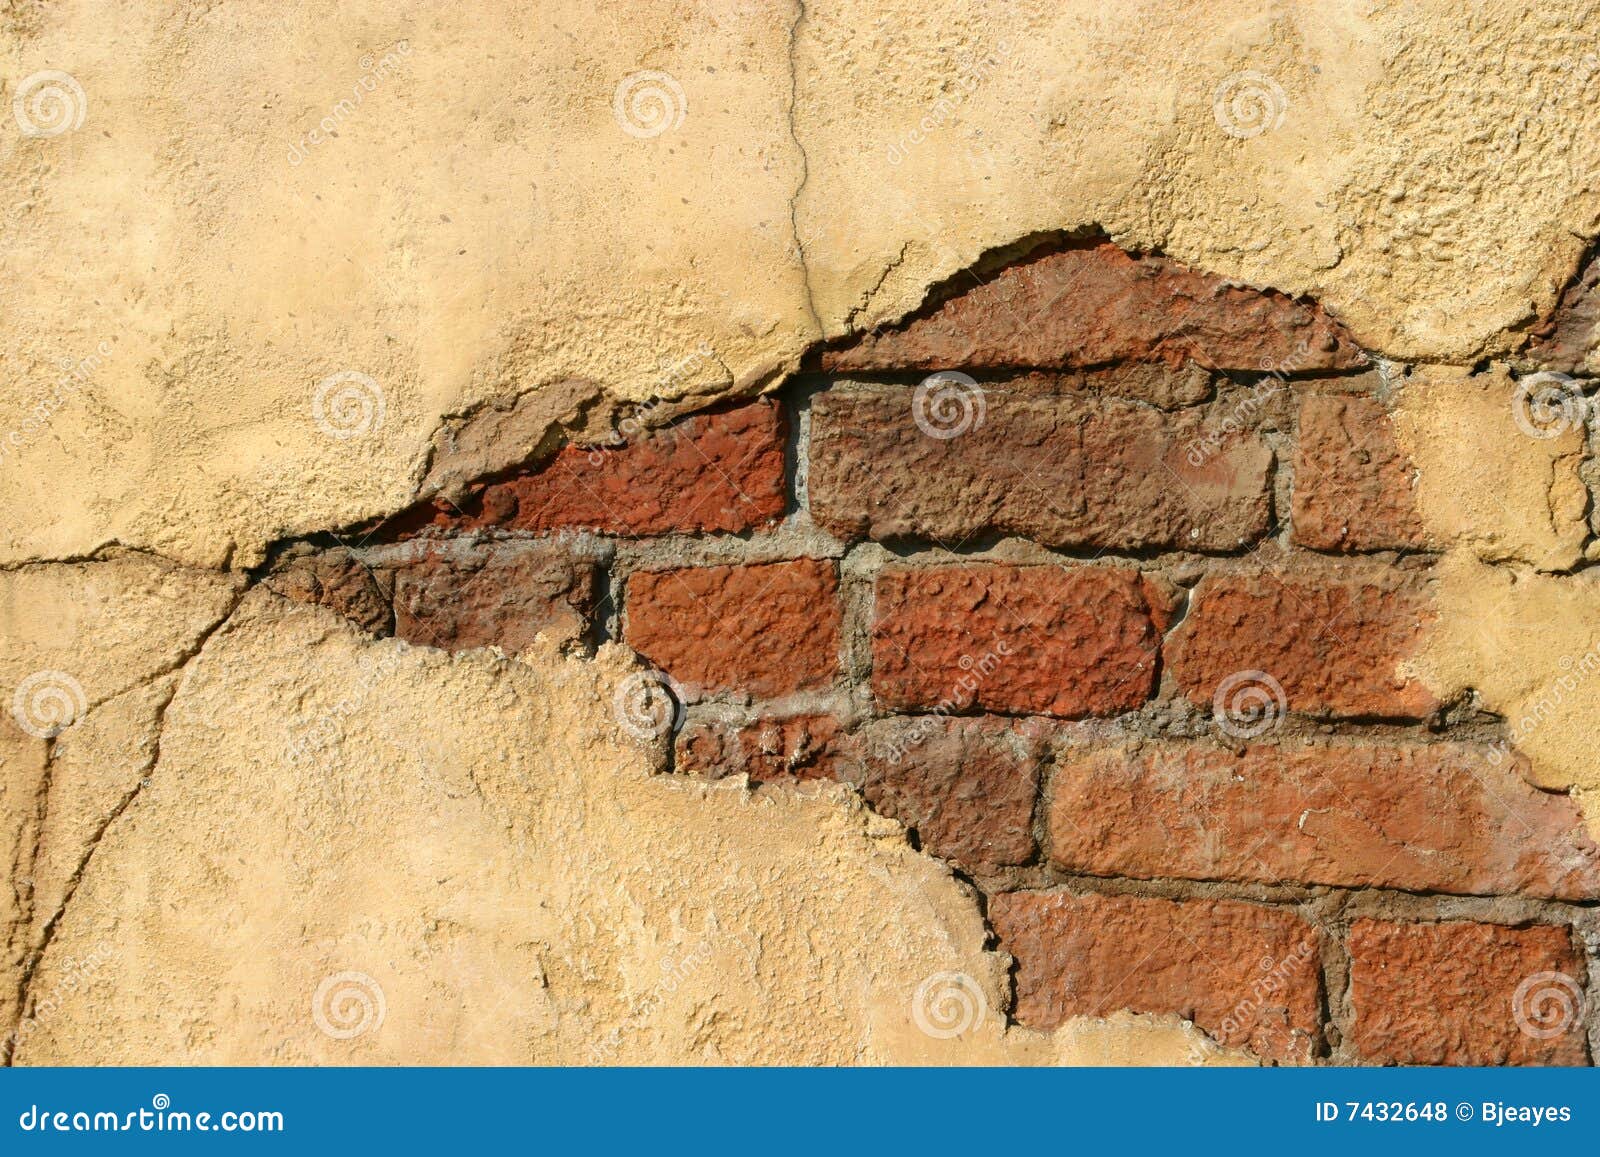 crumbling wall